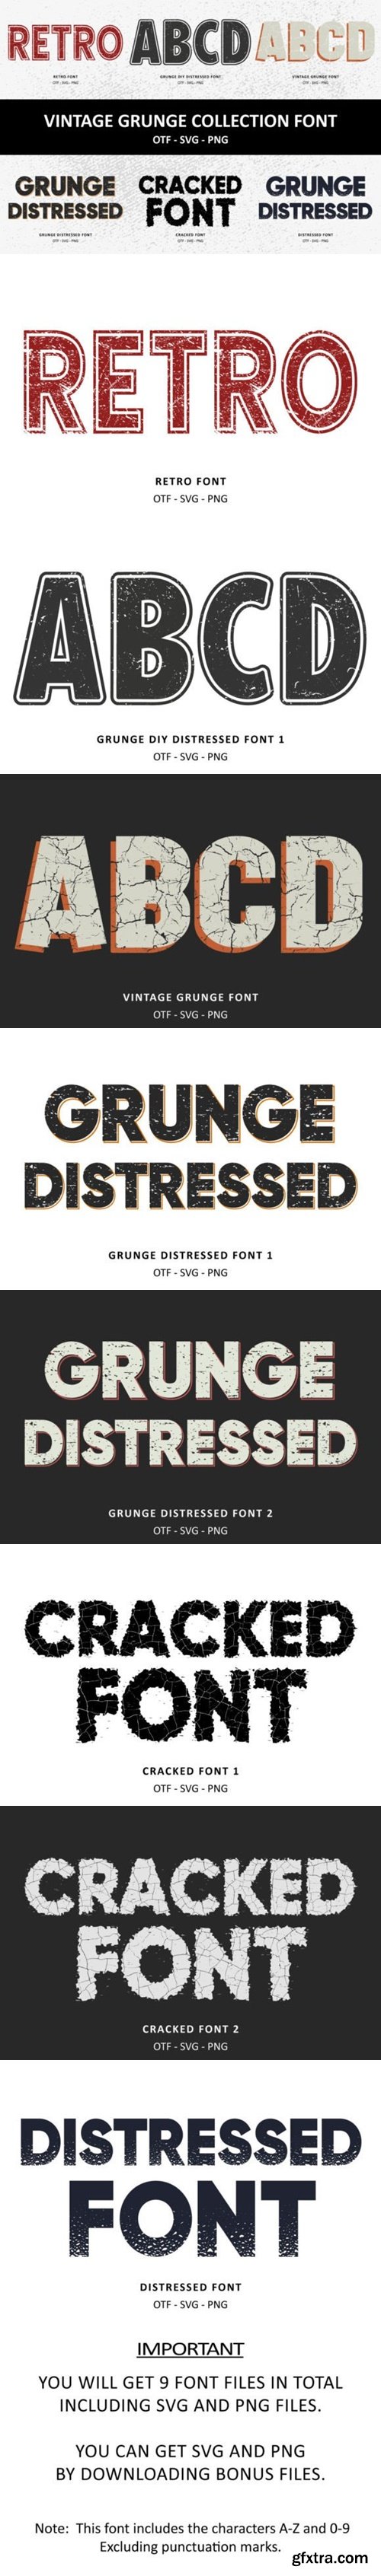 Vintage Grunge Collection Font 89928711